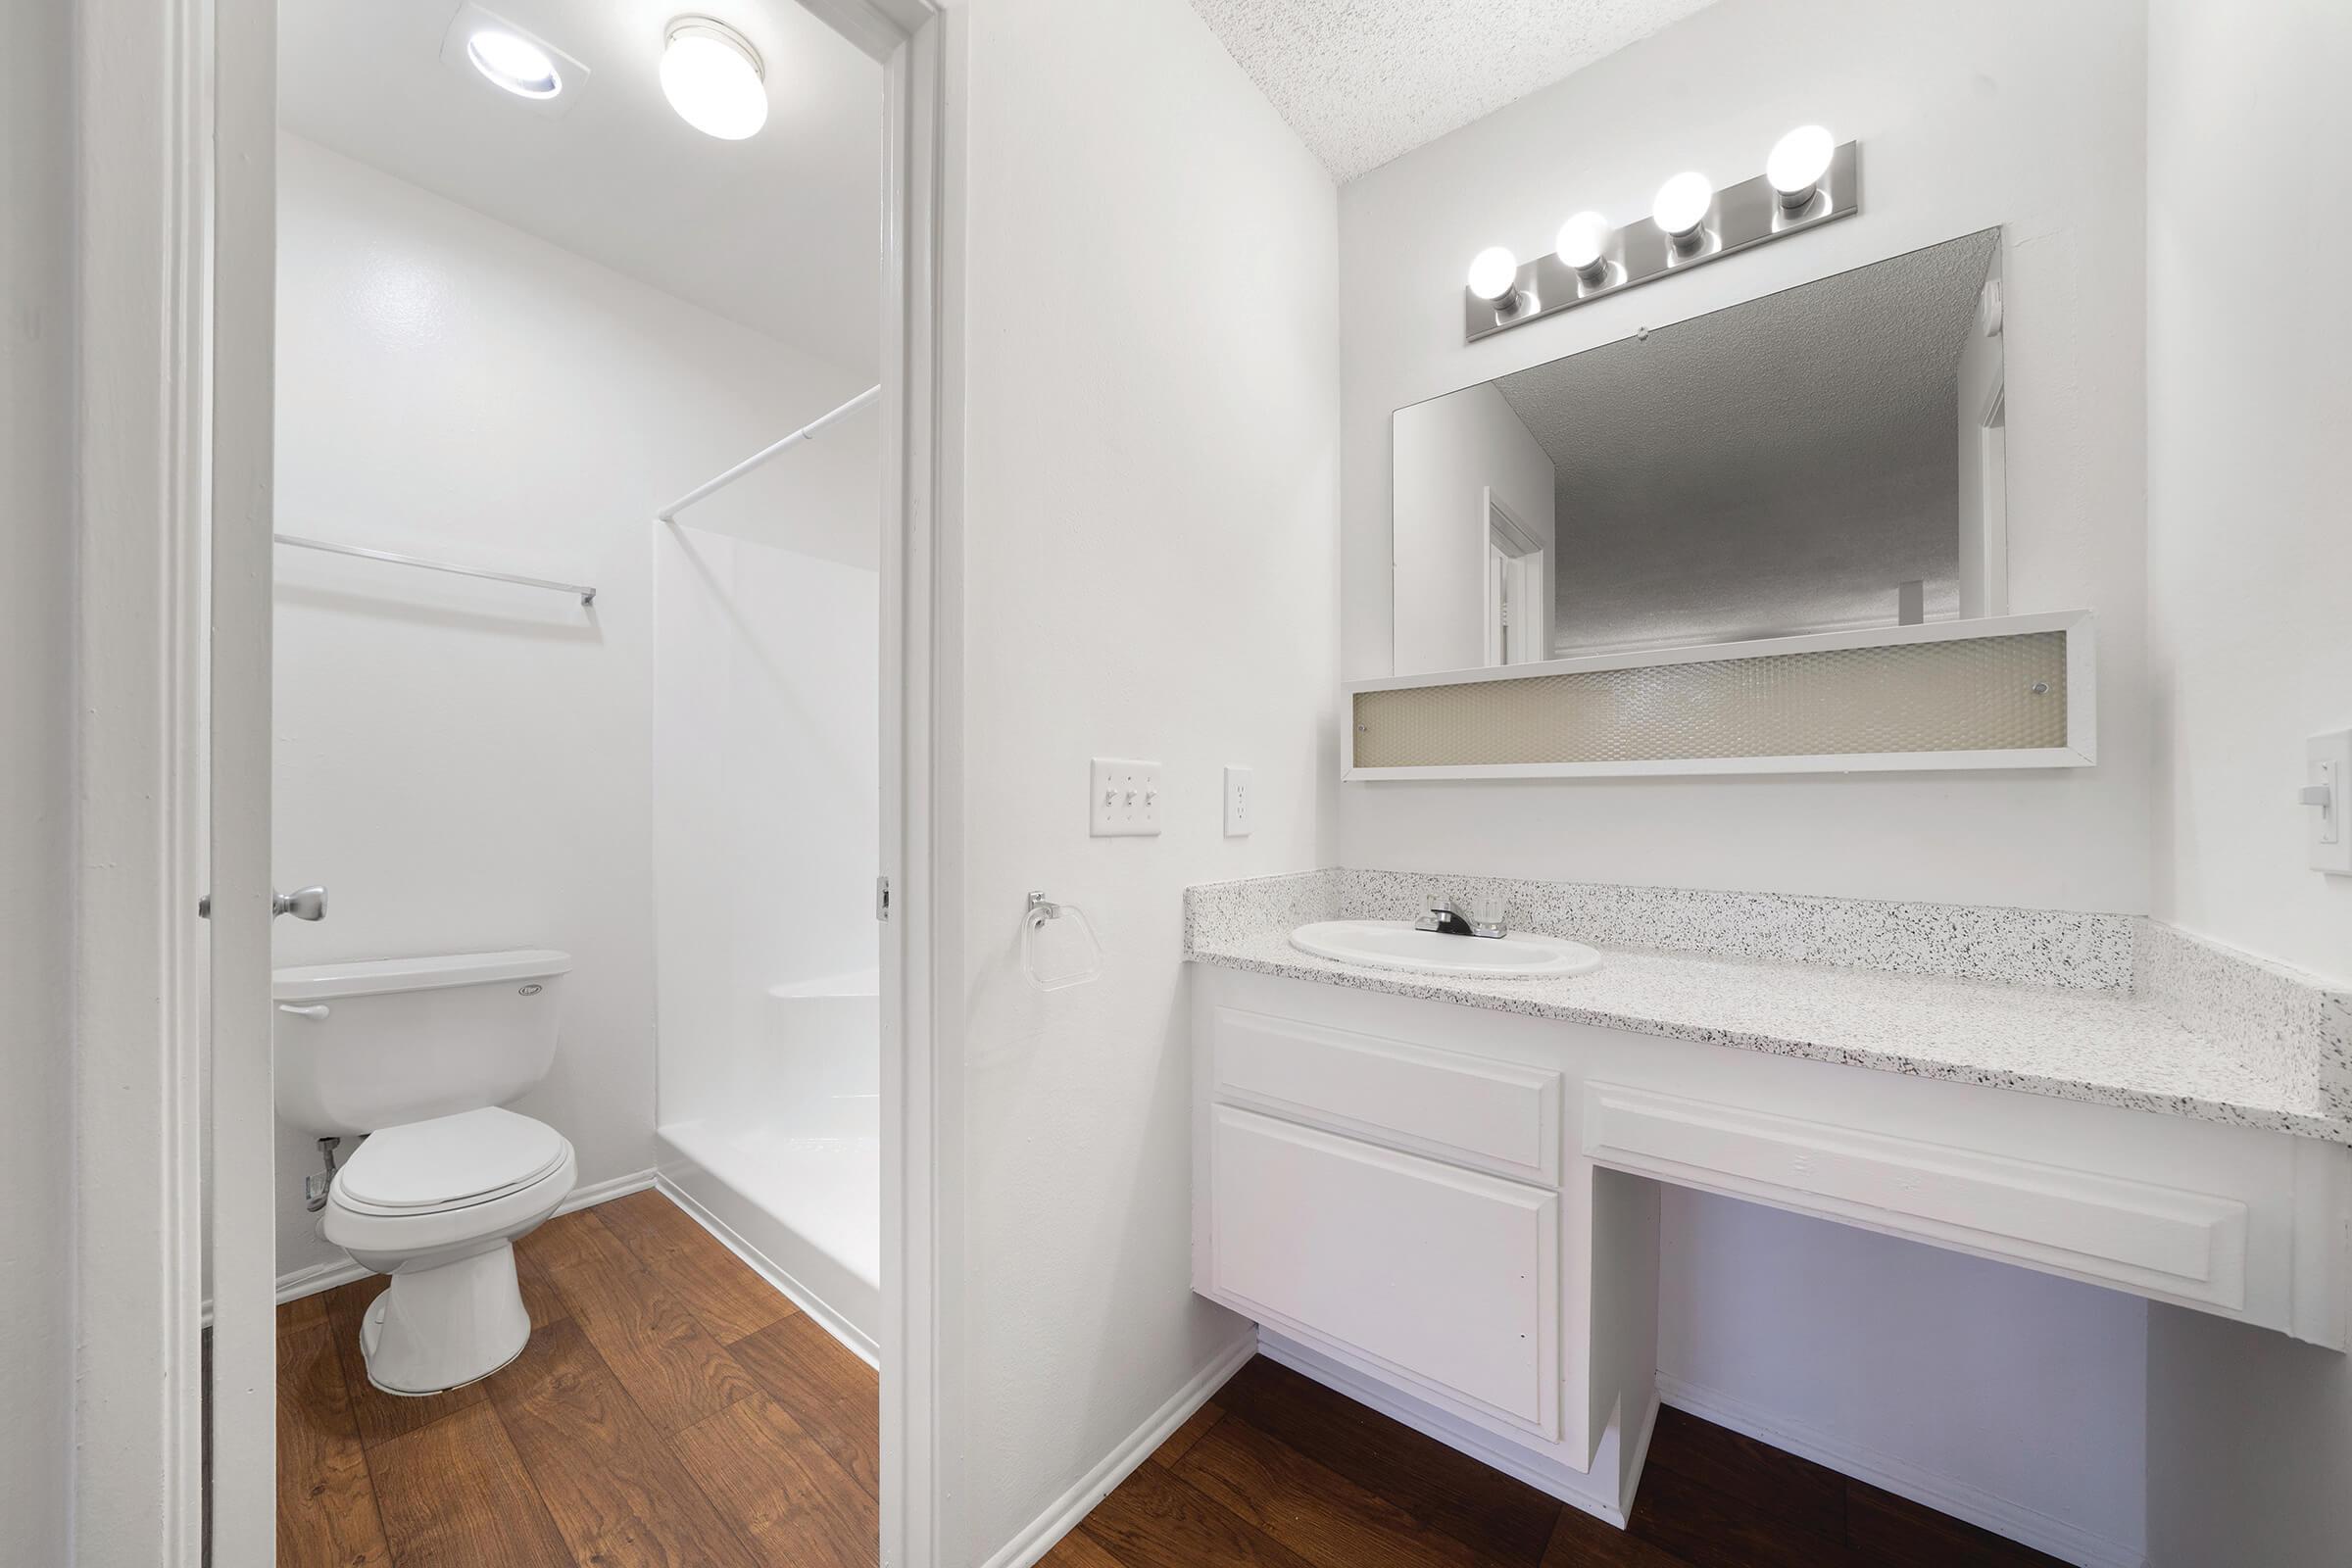 Bathroom sink and open bathroom door with wooden floors